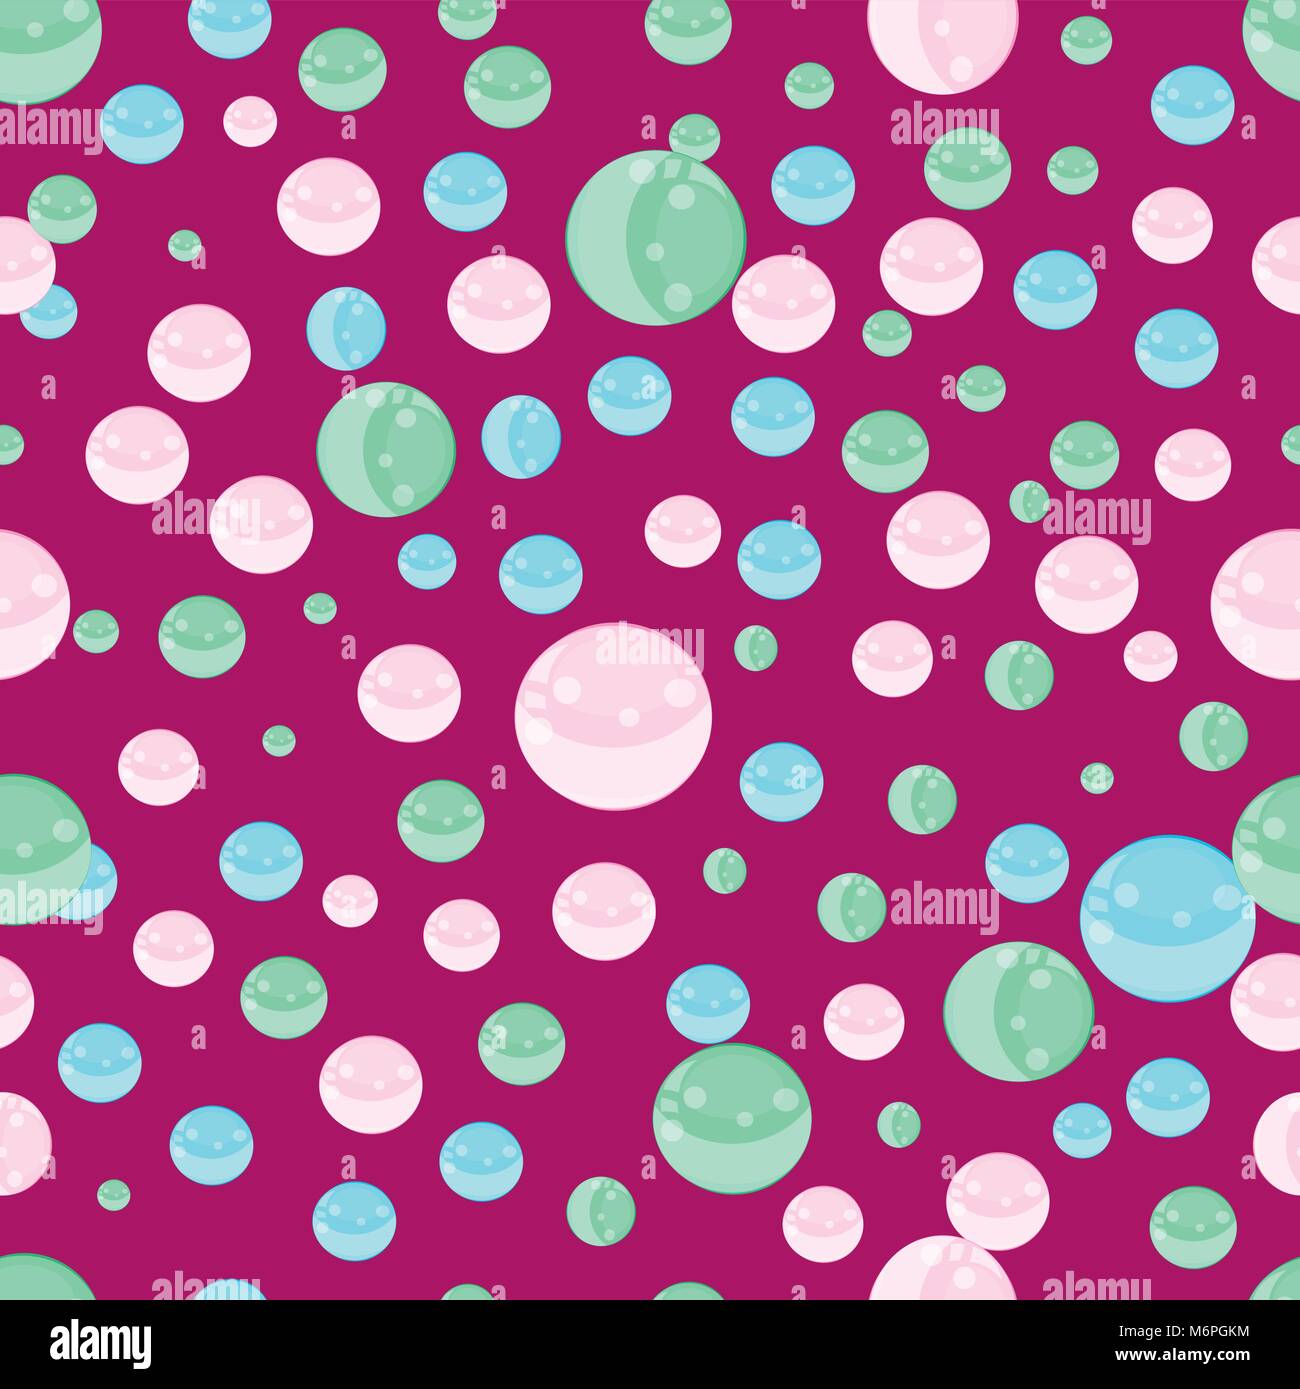 Cute nahtlose Muster mit fliegenden bunten Blasen- oder 3d-Kugeln auf lila Hintergrund. Tapeten, Vector Illustration, Poster, Banner, Template, Pr Stock Vektor